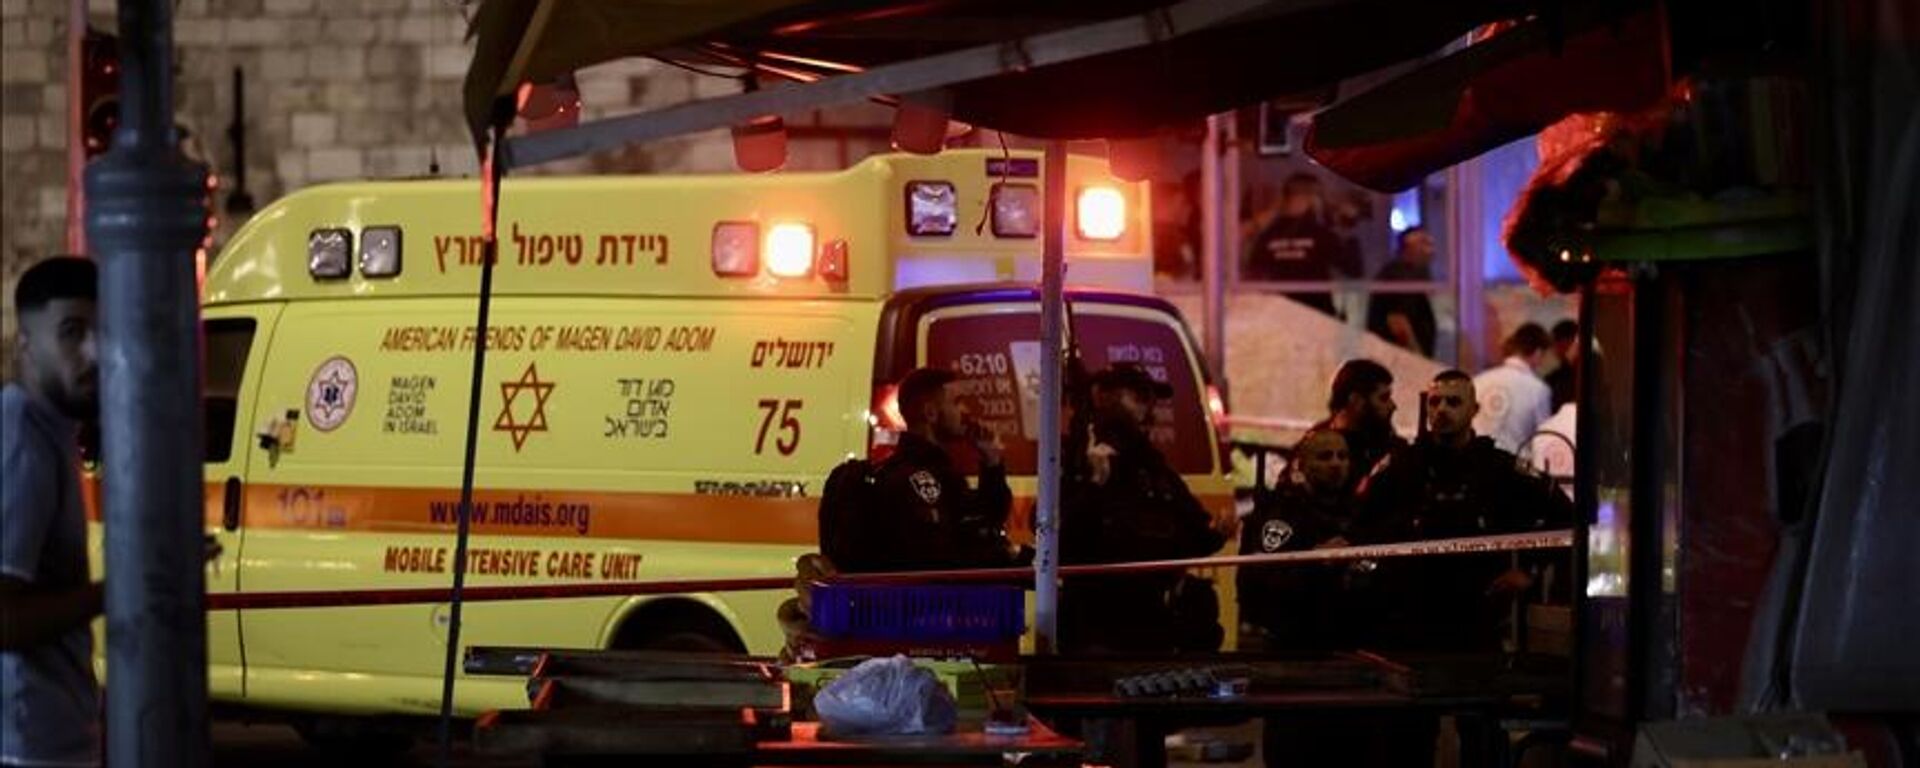 Kudüs'te İsraillileri taşıyan bir otobüse ateş açılması sonucu 7 kişinin yaralandığı bildirildi. - Sputnik Türkiye, 1920, 14.08.2022